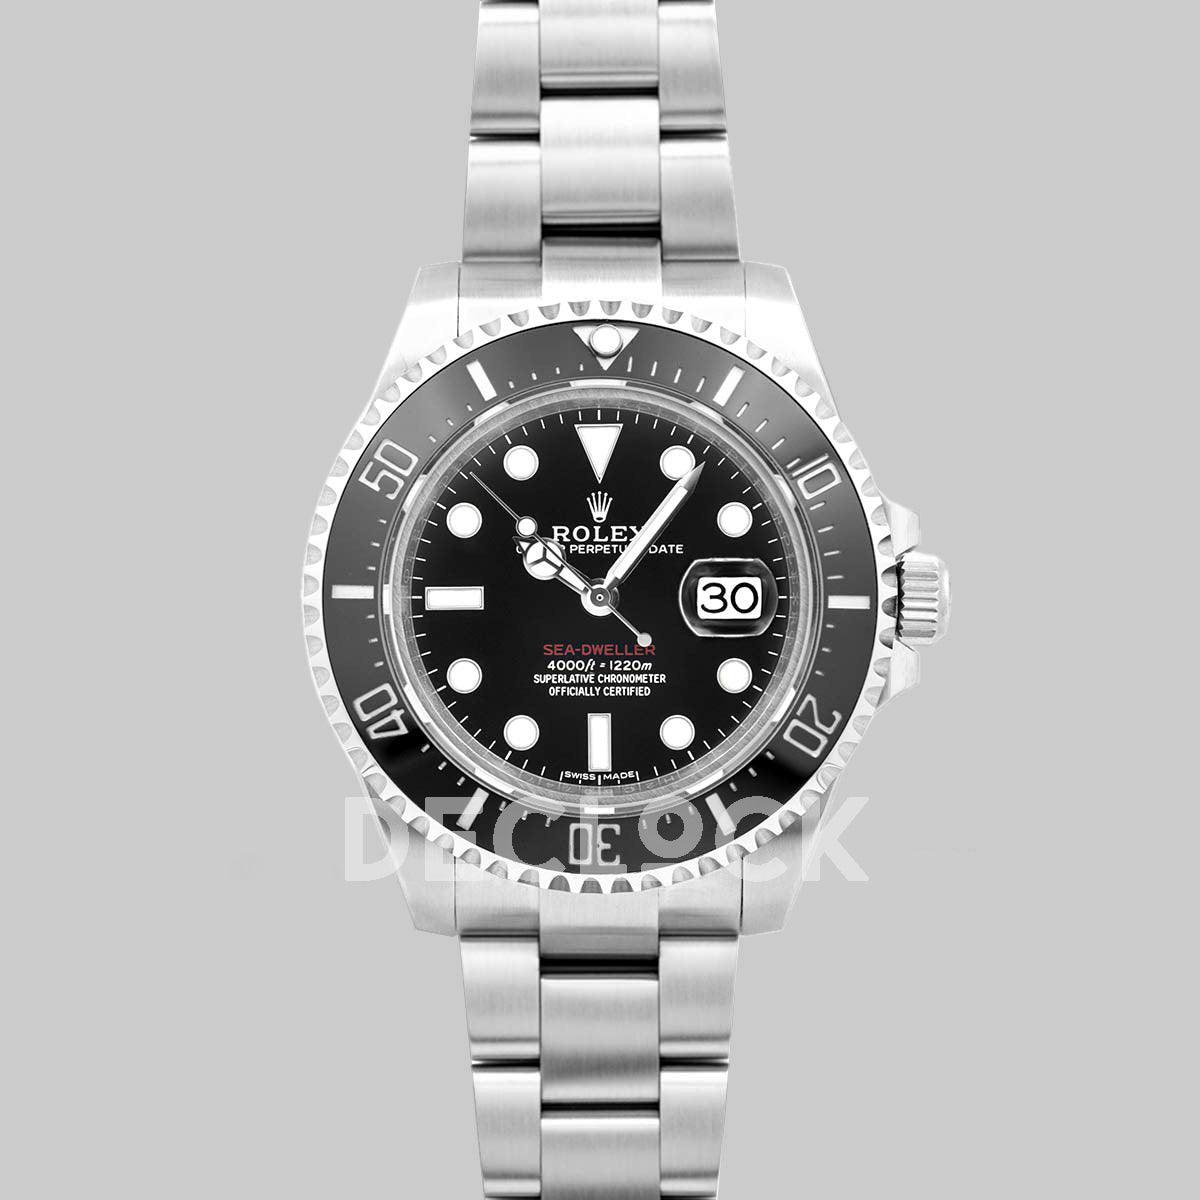 Replica Rolex Sea-Dweller 50th Anniversary 126600 Black Ceramic - Replica Watches